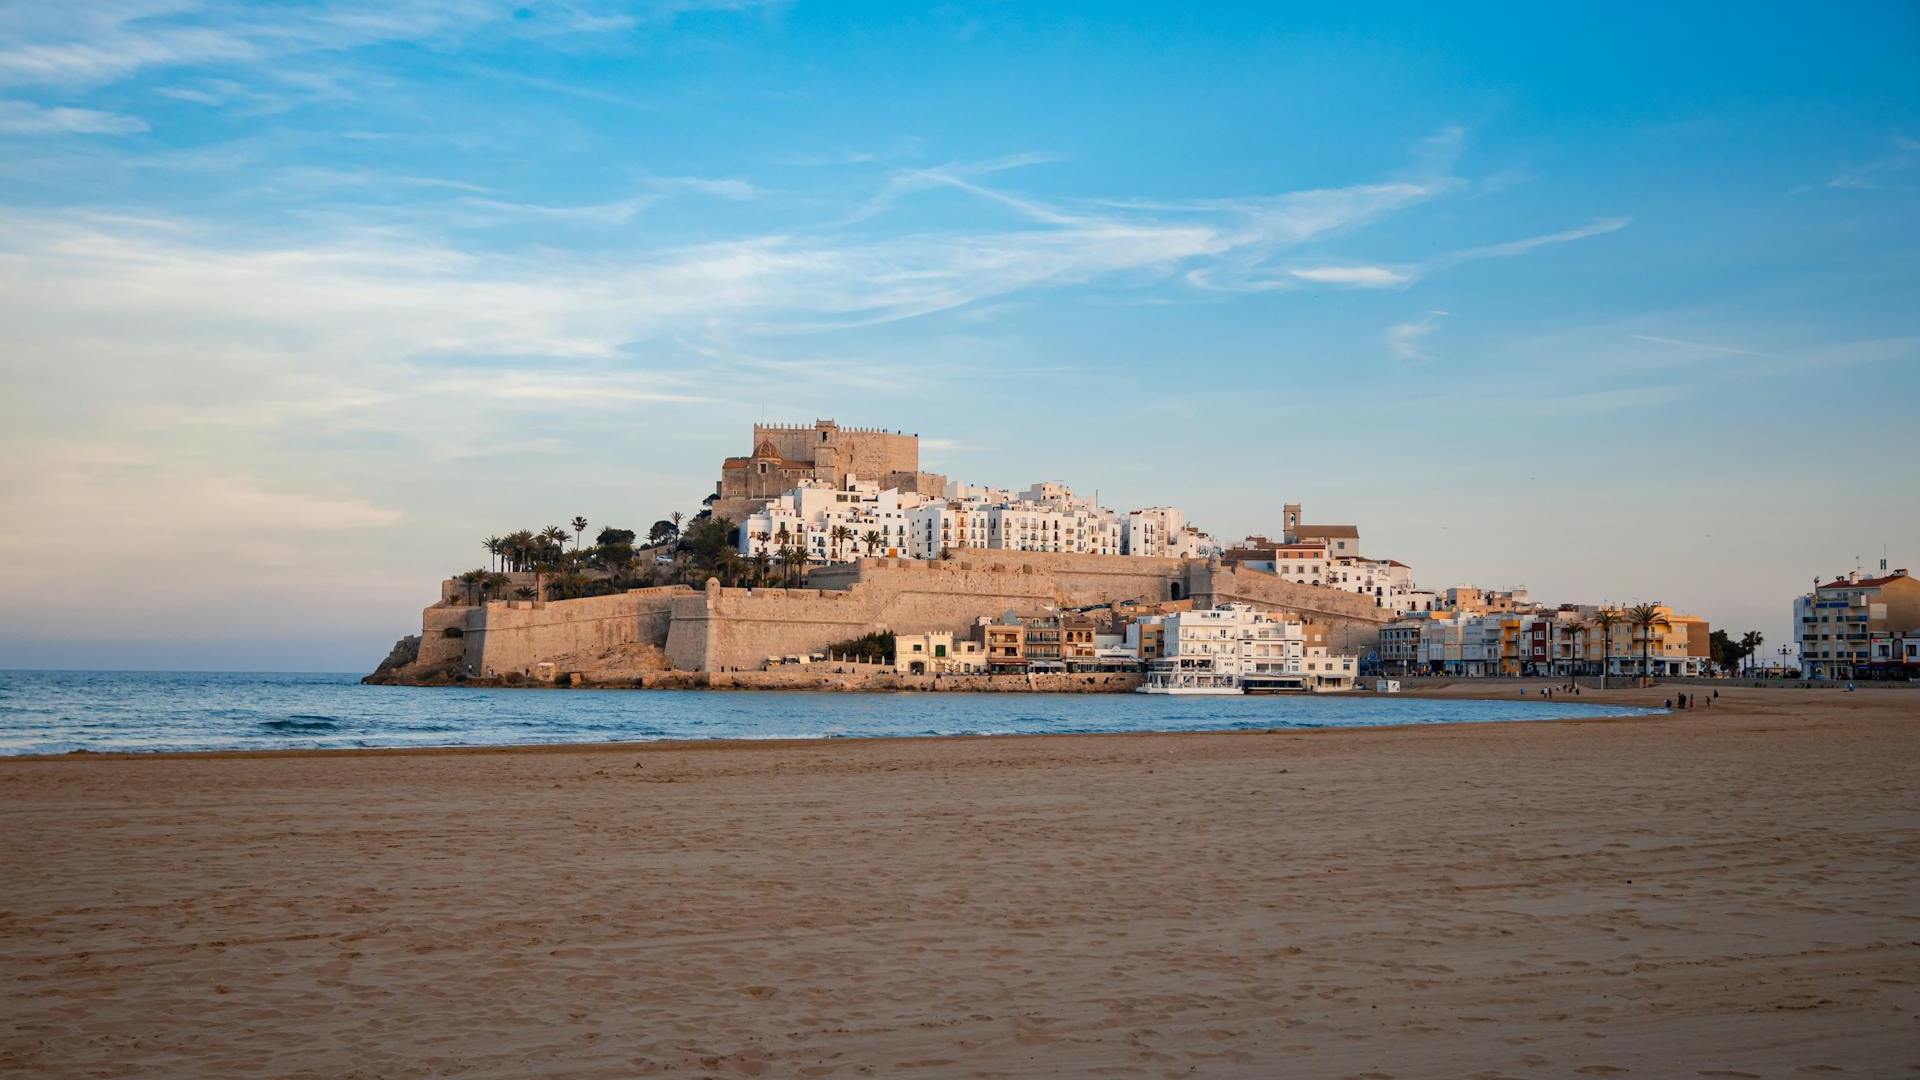 Panoramablick auf die charmante Küstenstadt Peniscola in Spanien, die noch nicht von Touristen überlaufen ist, mit der historischen Festung auf einem Hügel, umgeben von weißen Gebäuden und einer ruhigen Strandpromenade.